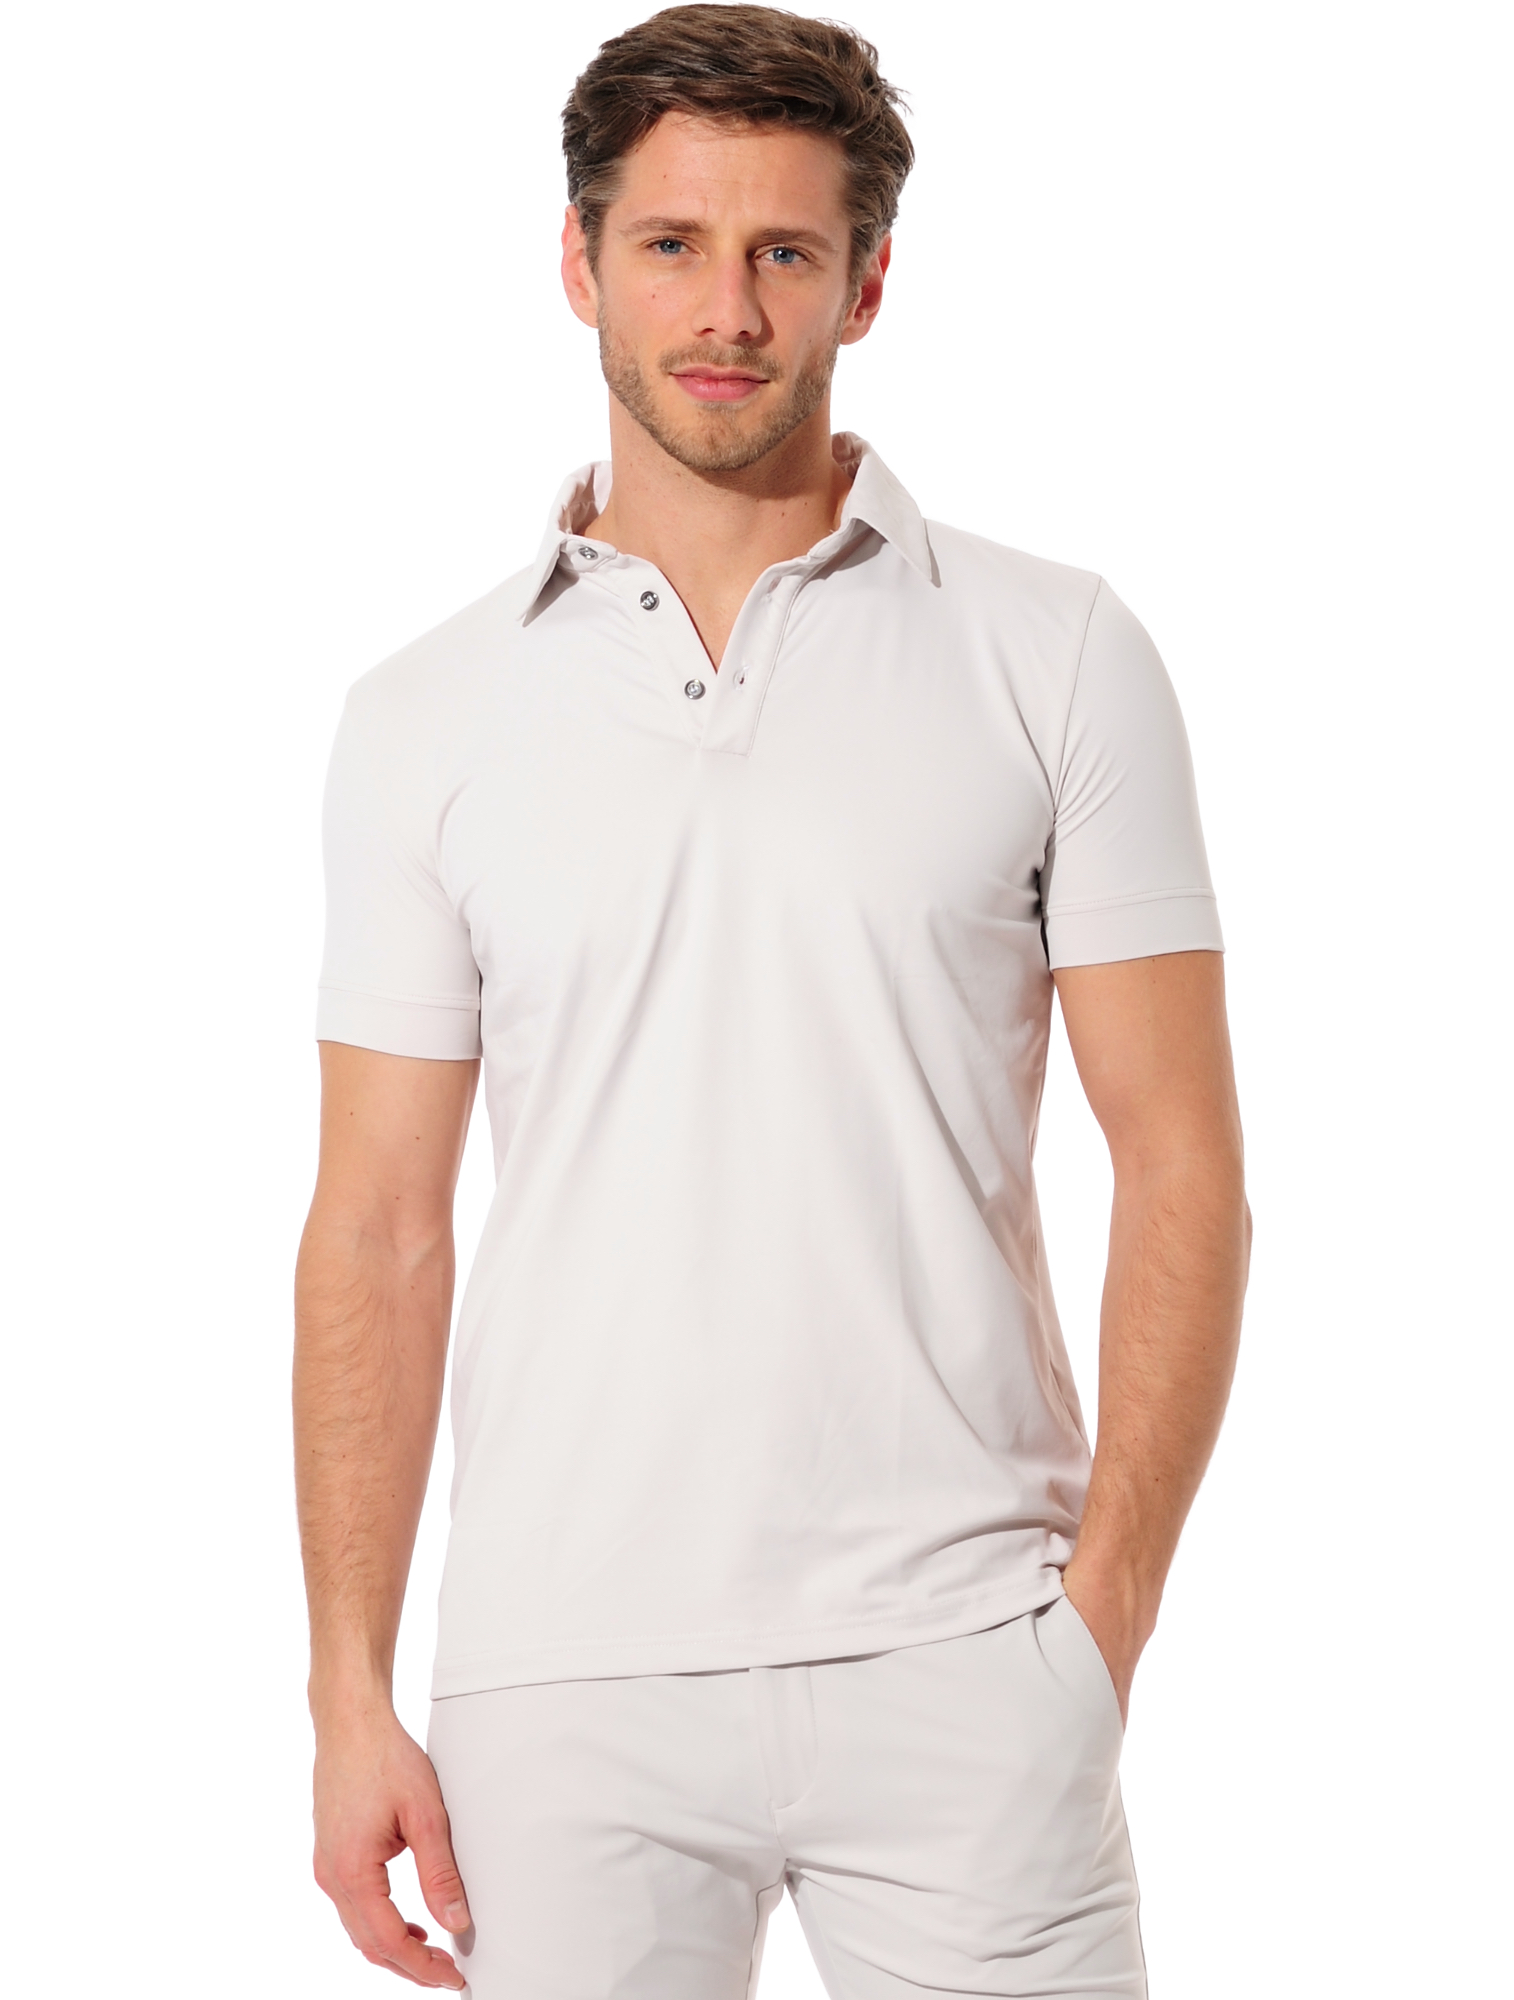 Jersey golf polo shirt linen 